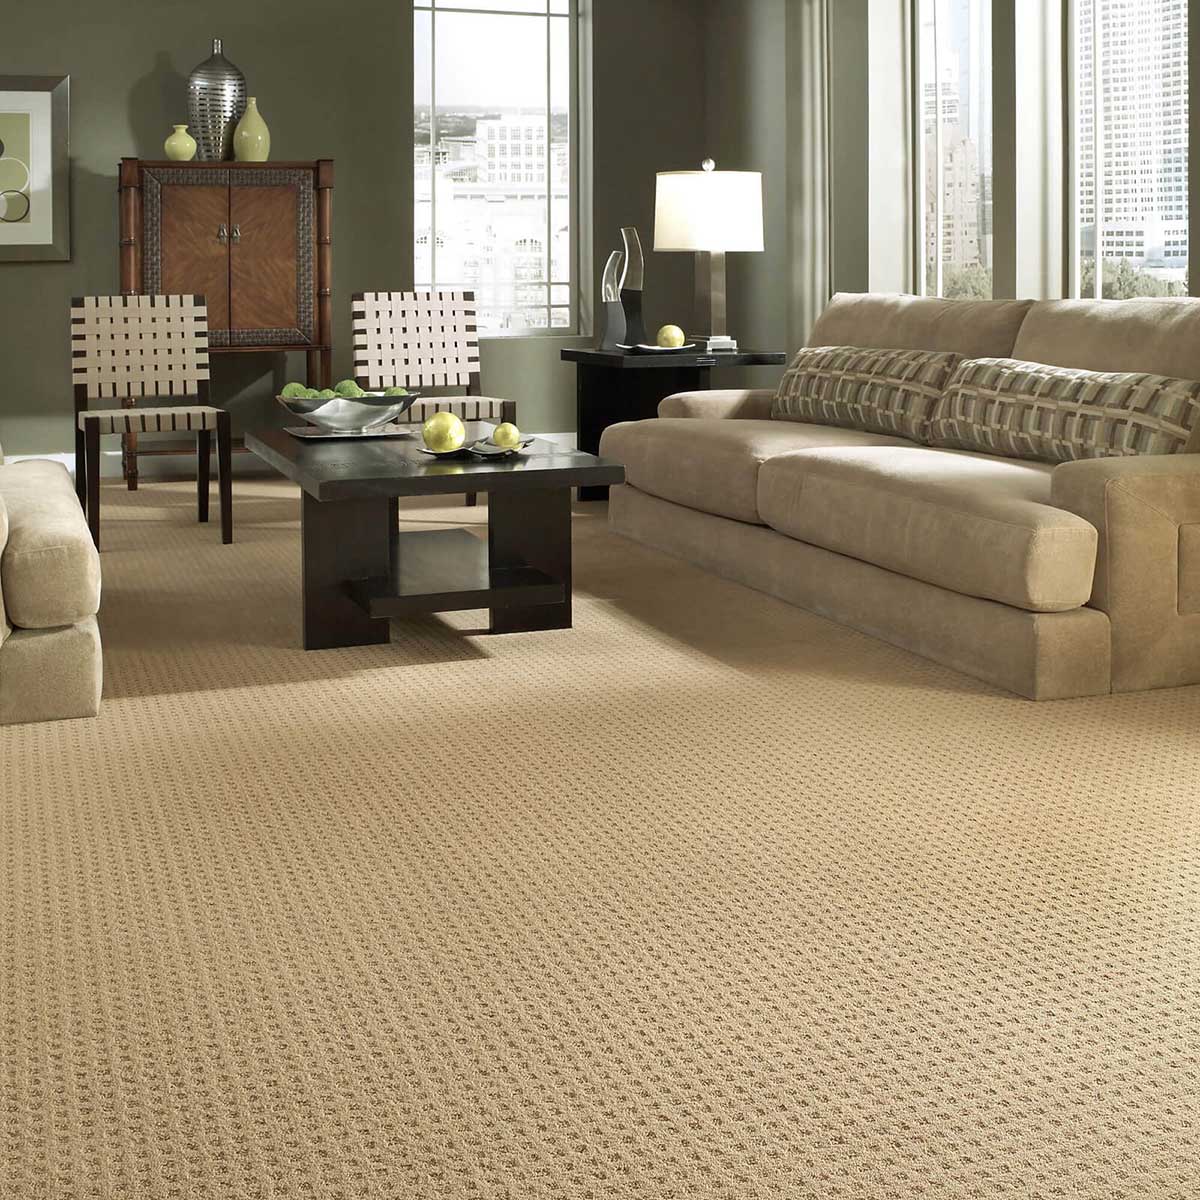 Living room Carpet | Carpetland USA of Virginia